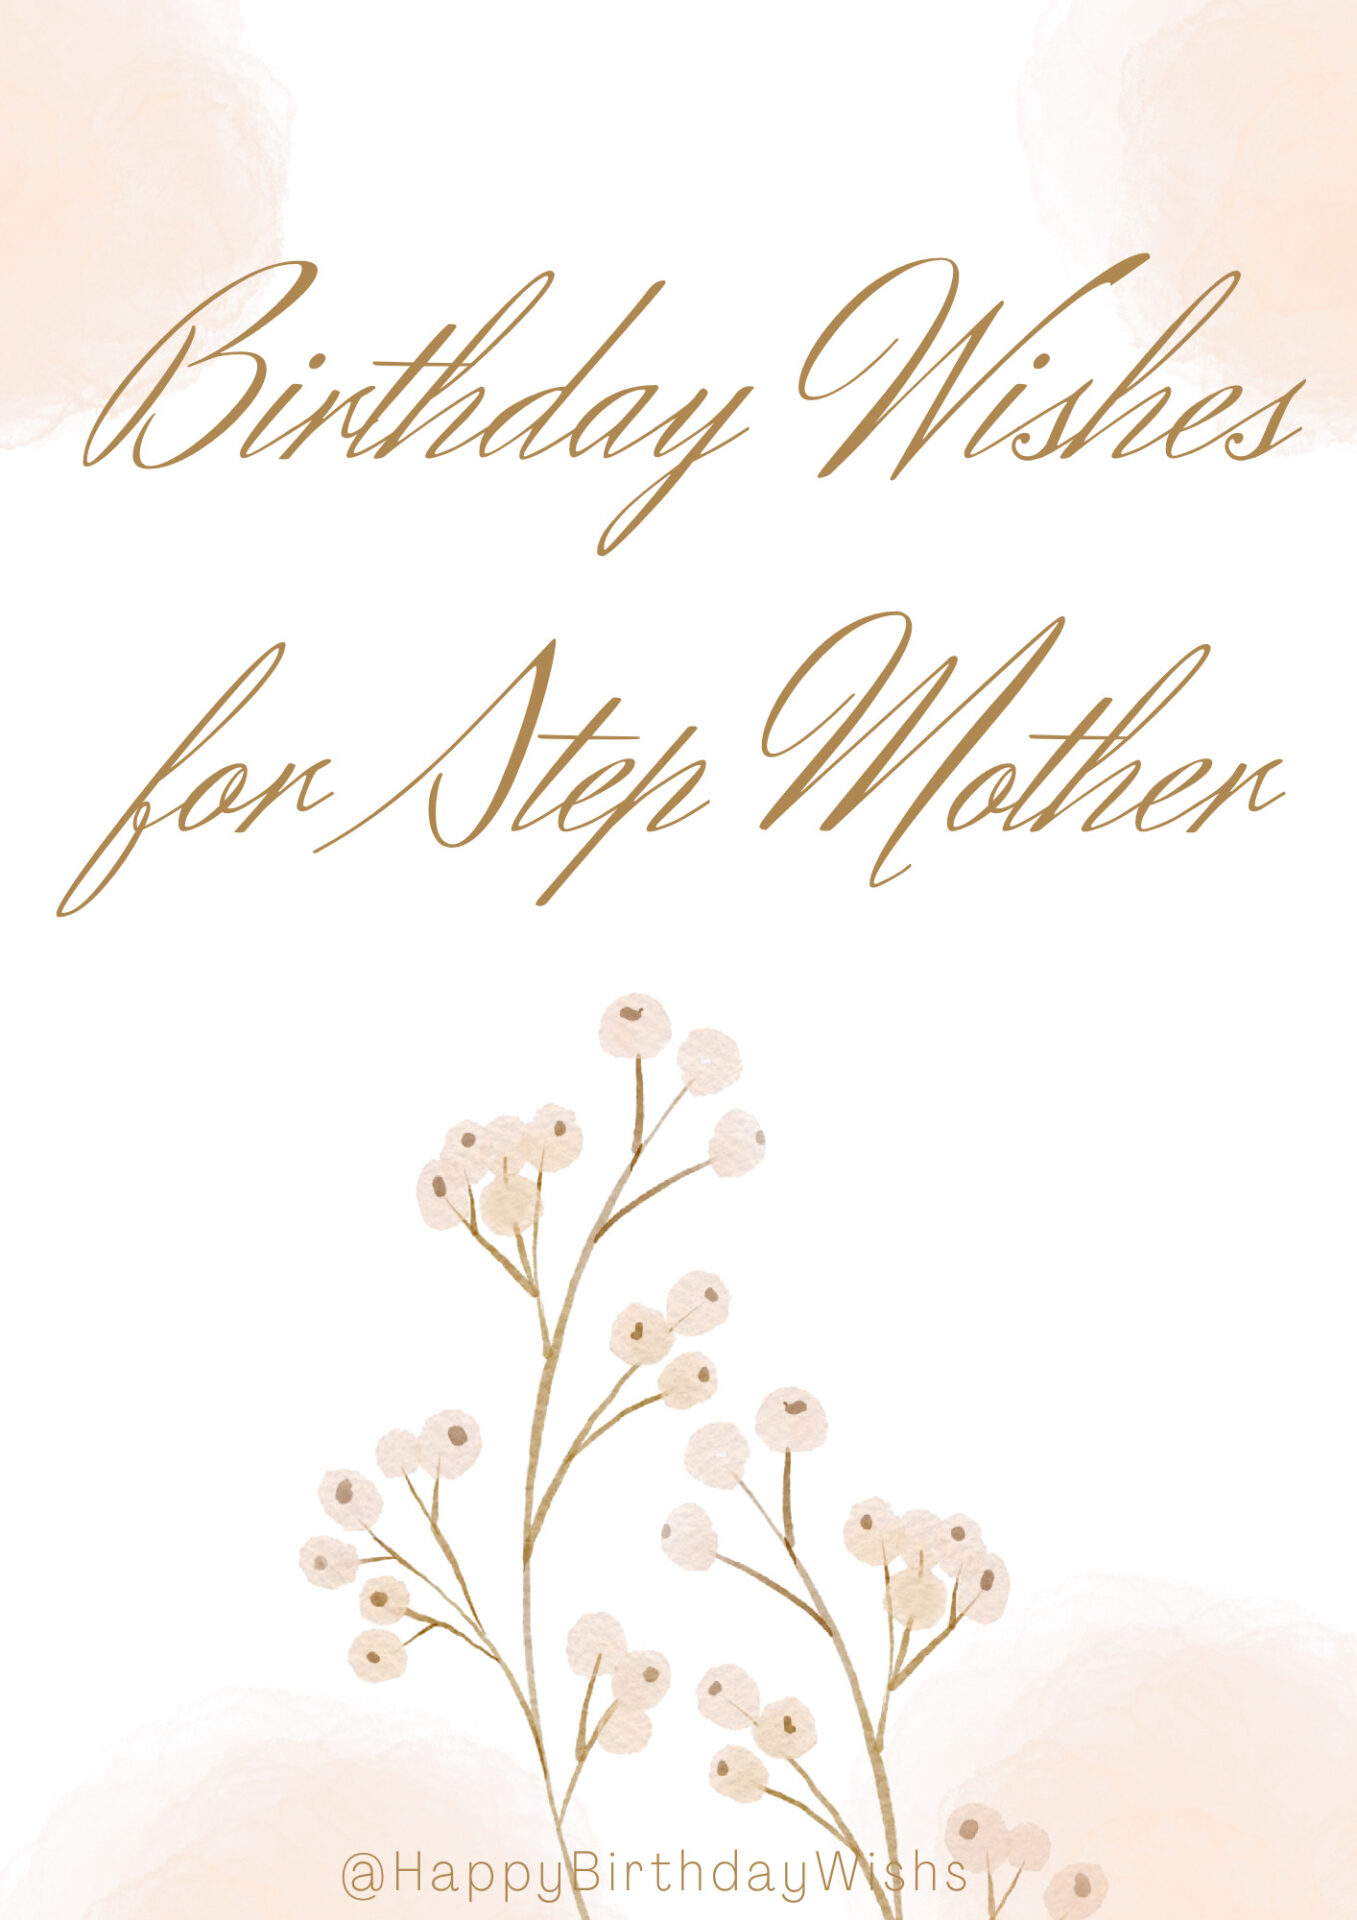 Stepmom Birthday Wishes